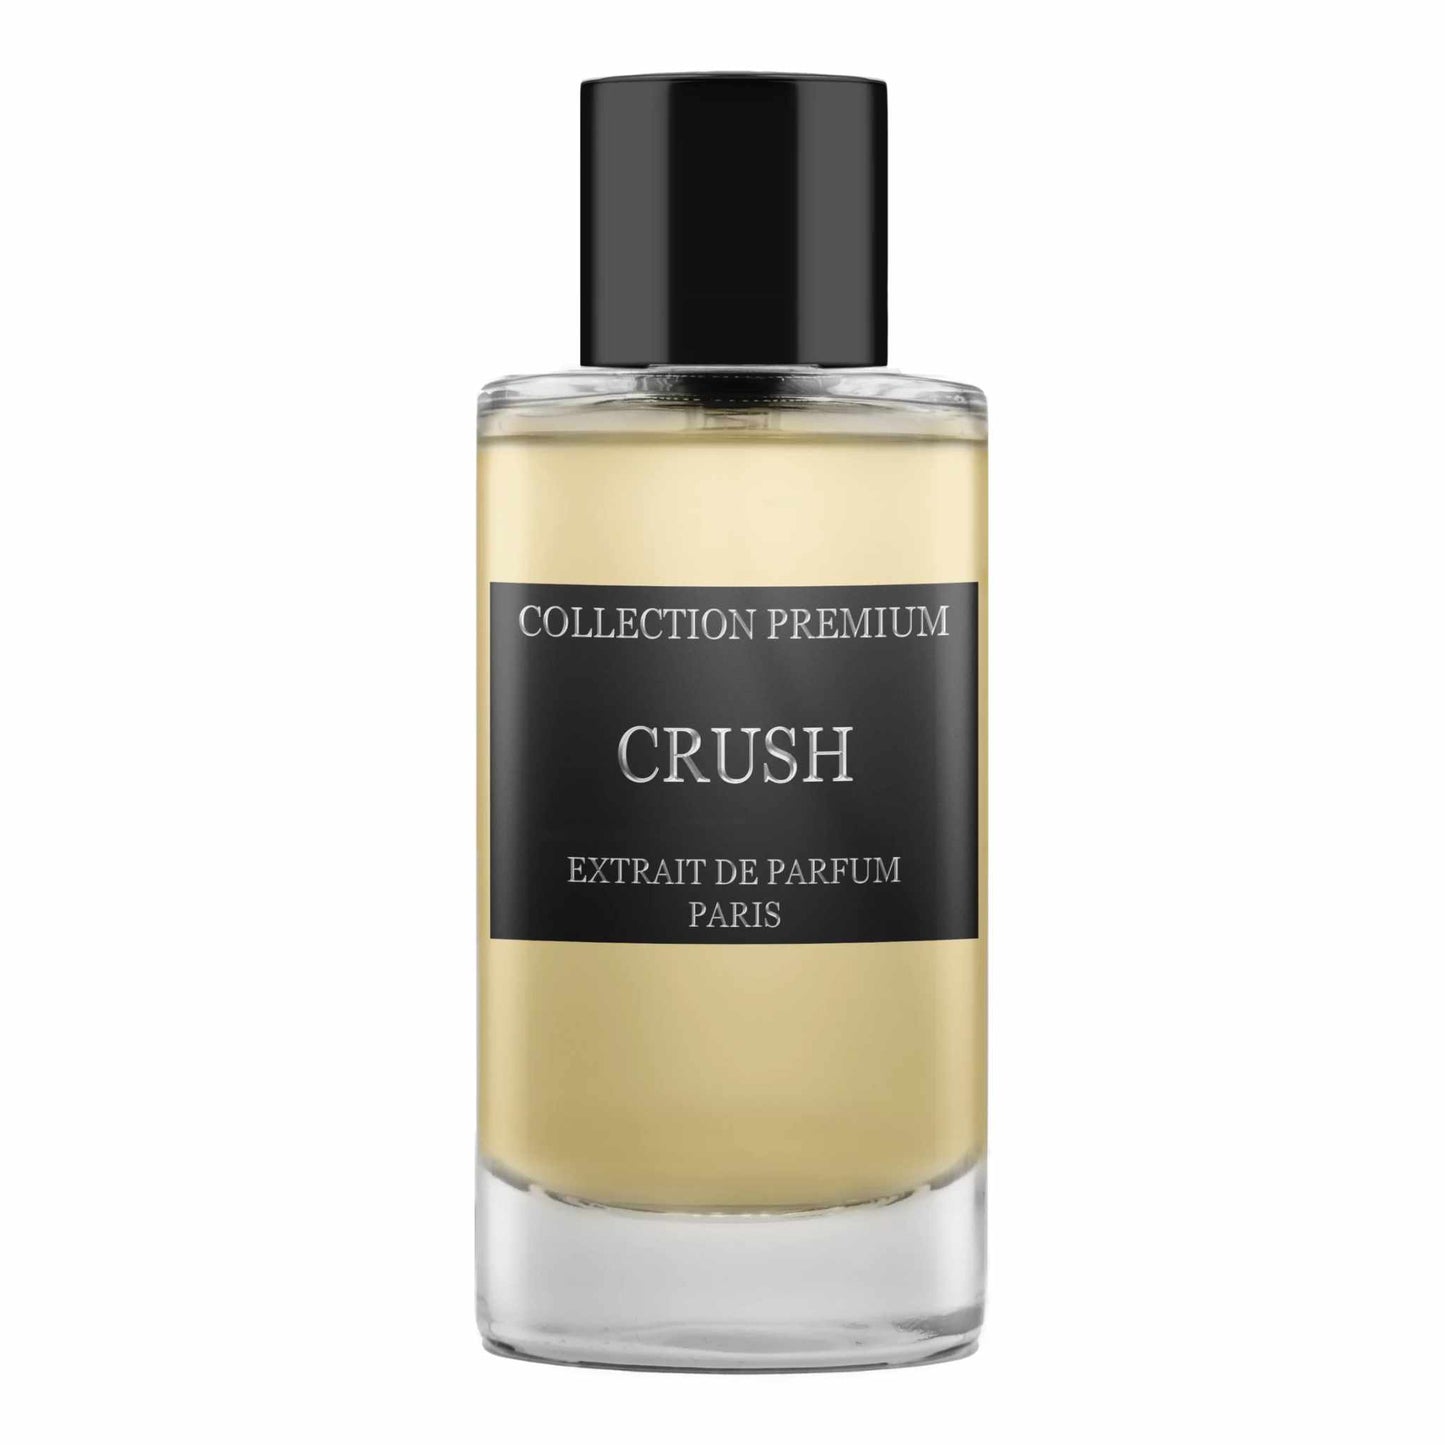 Collection Premium Crush Extrait de Parfum 50 ml